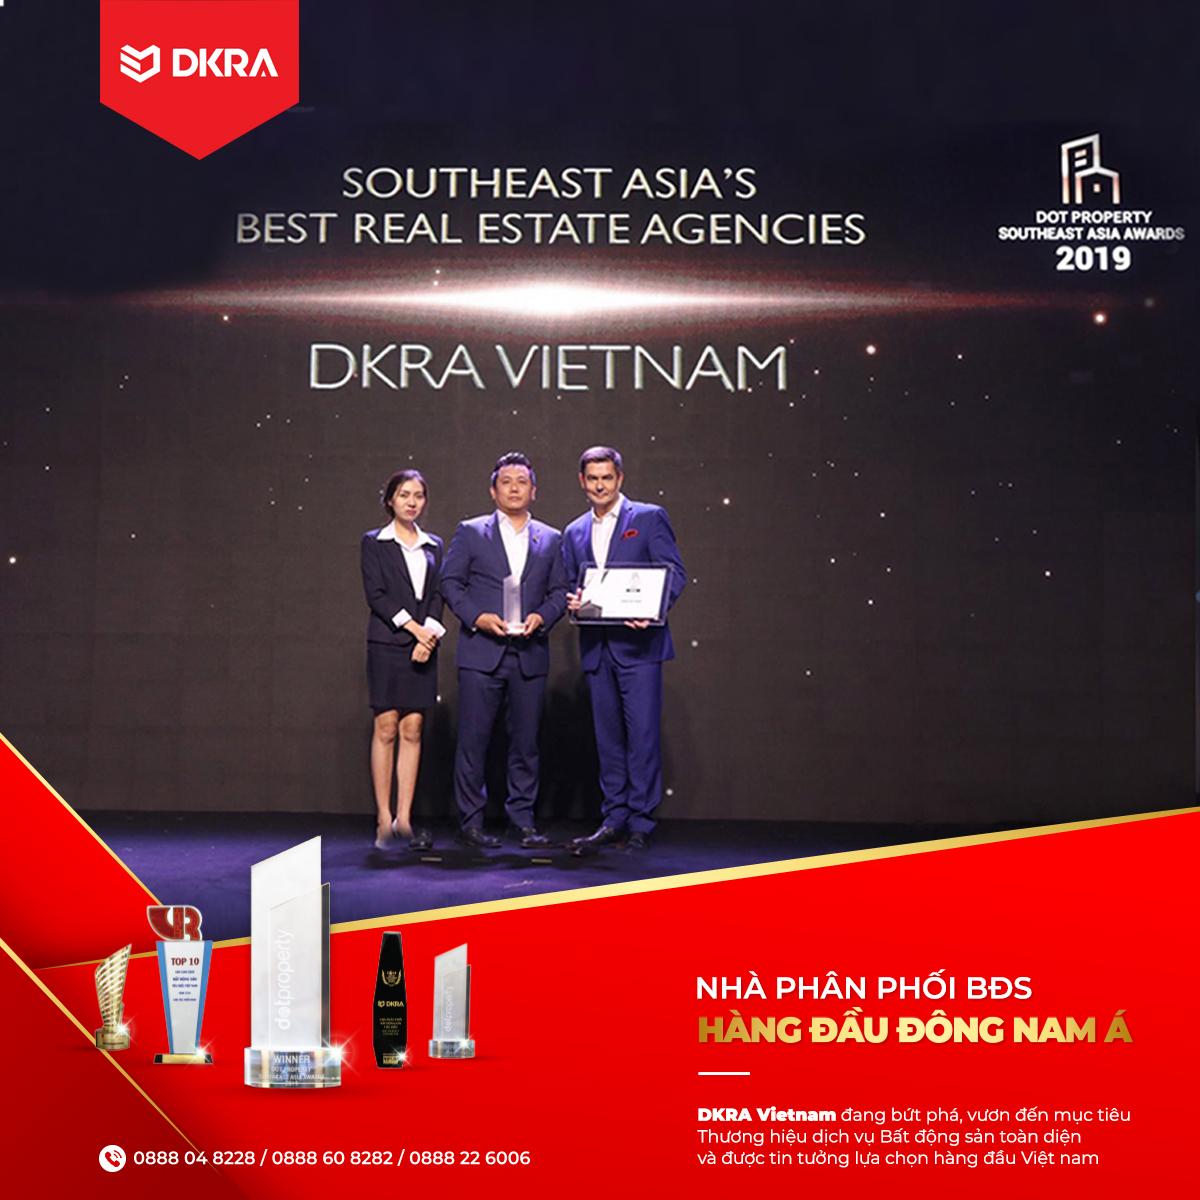 DKRA Vietnam vươn tầm quốc tế với giải thưởng "NHÀ PHÂN PHỐI BẤT ĐỘNG SẢN TỐT NHẤT ĐÔNG NAM Á"